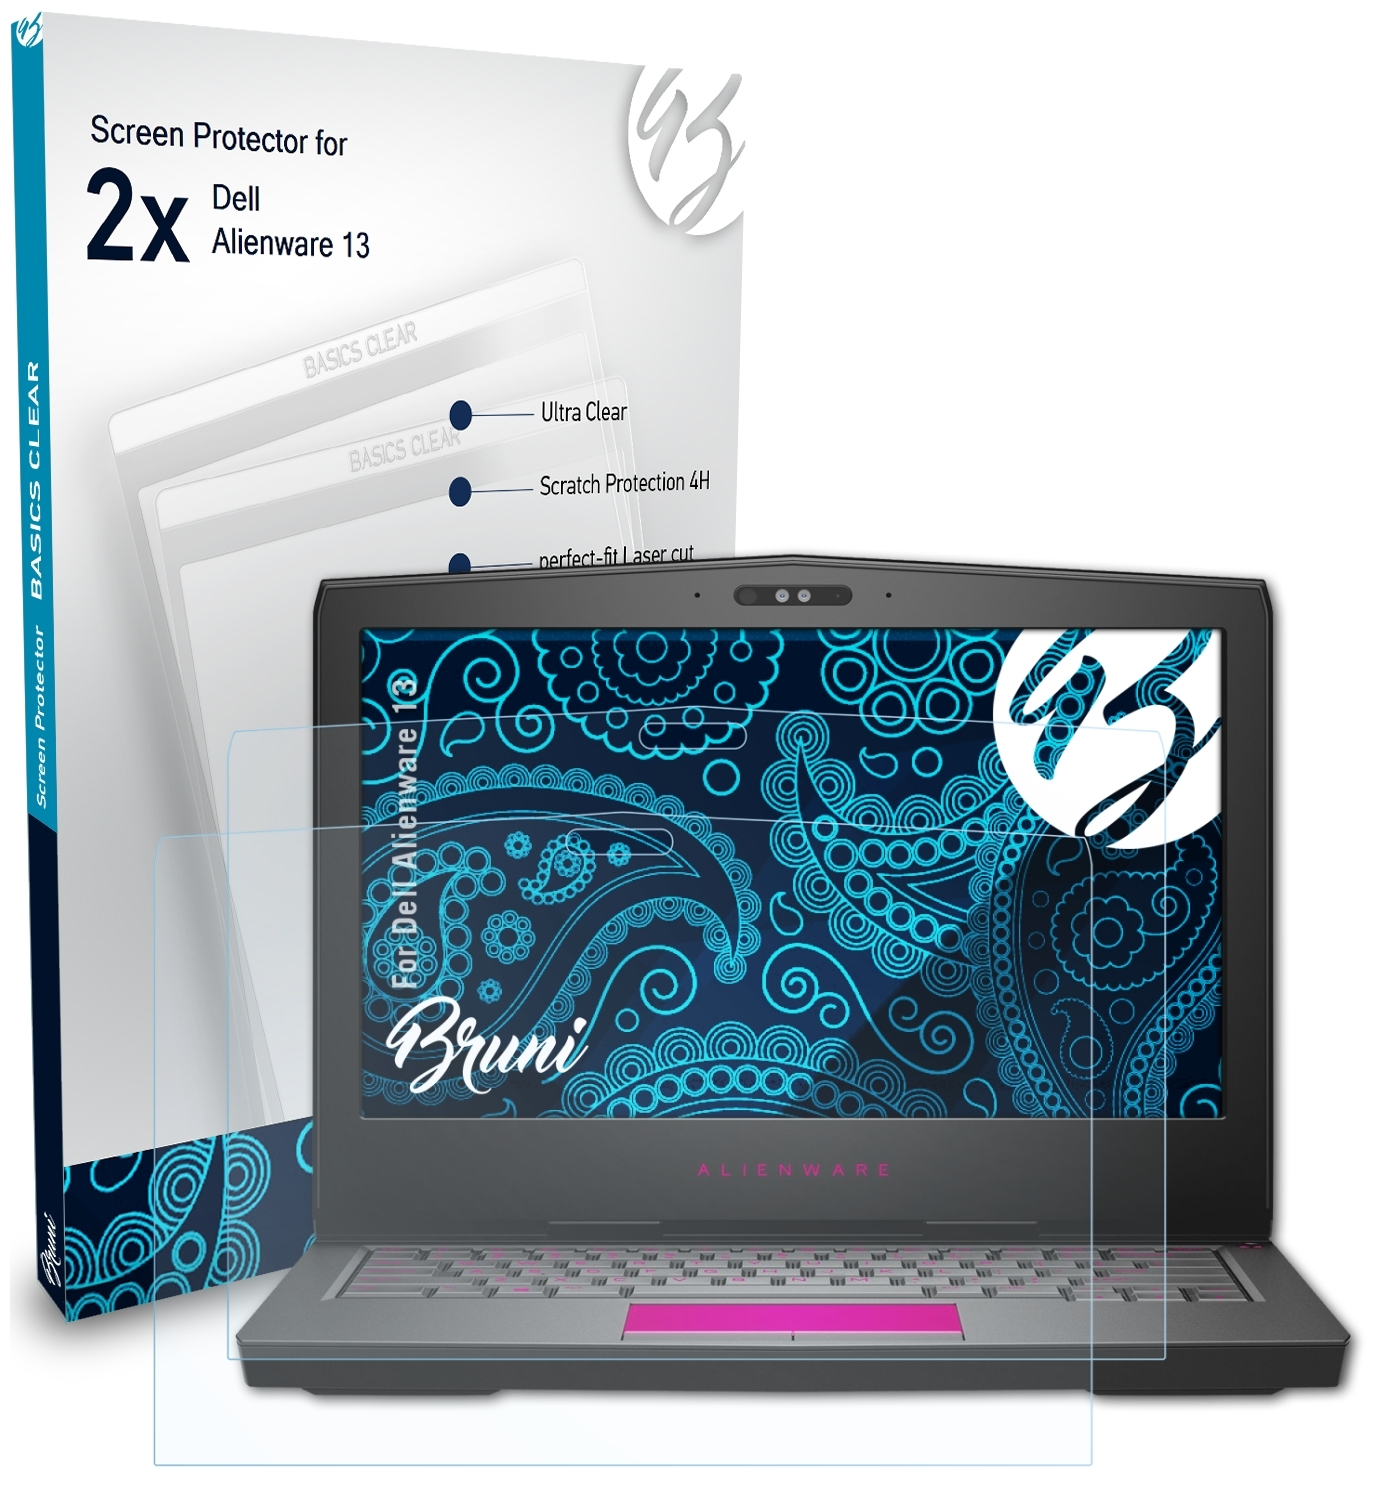 2x Alienware Basics-Clear 13) Dell Schutzfolie(für BRUNI